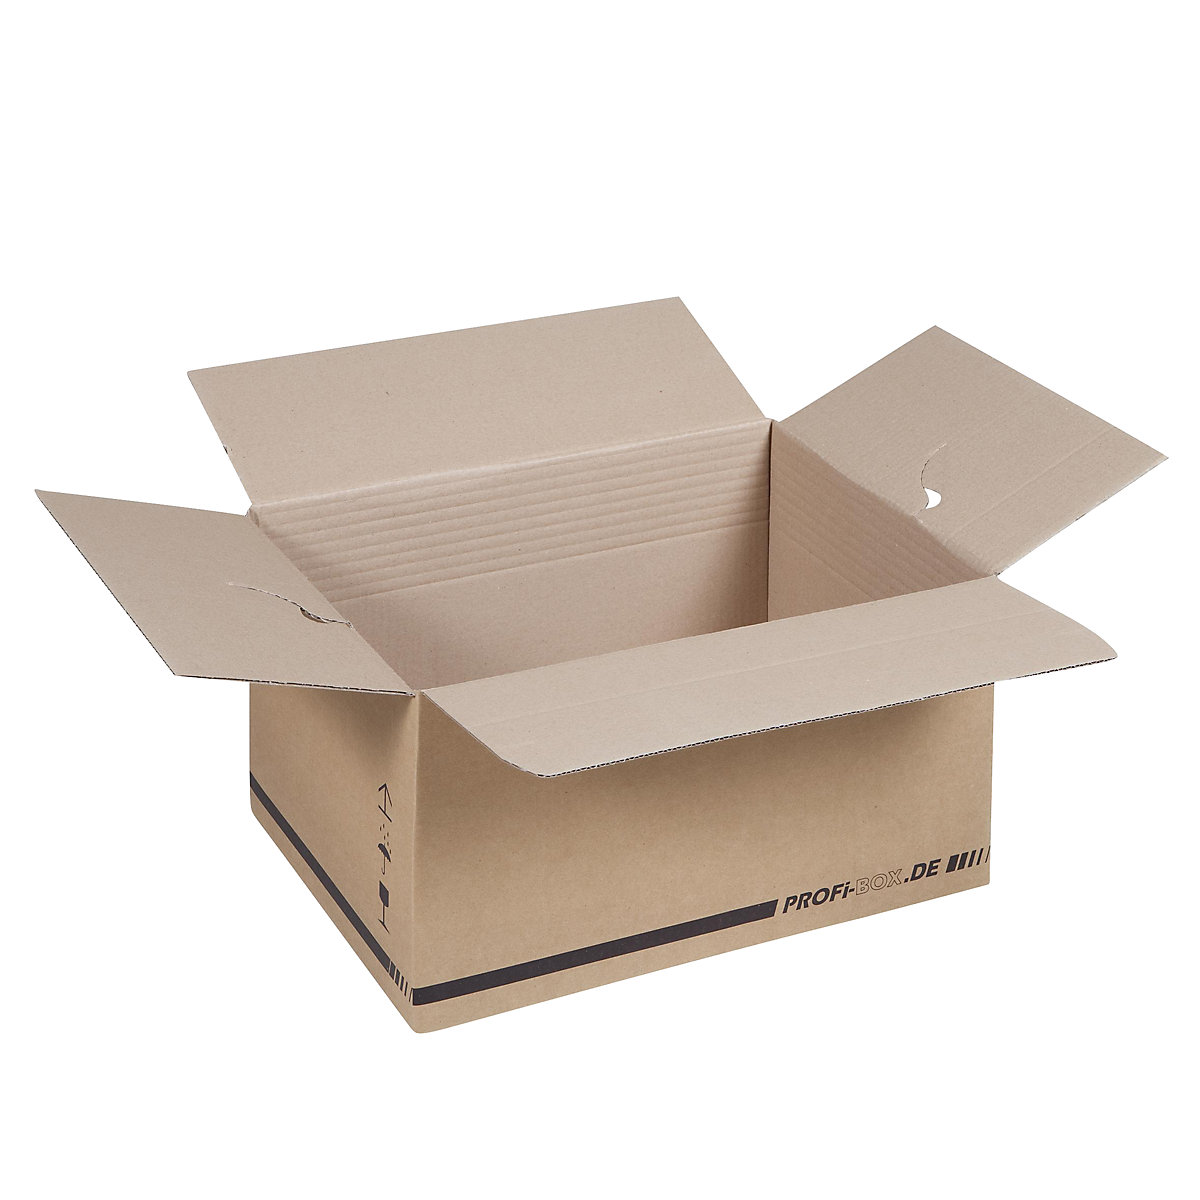 Profi box, z 1-vlnitej lepenky, FEFCO 0701, vnútorné rozmery 445 x 315 x 235 mm, OJ 50 ks-10